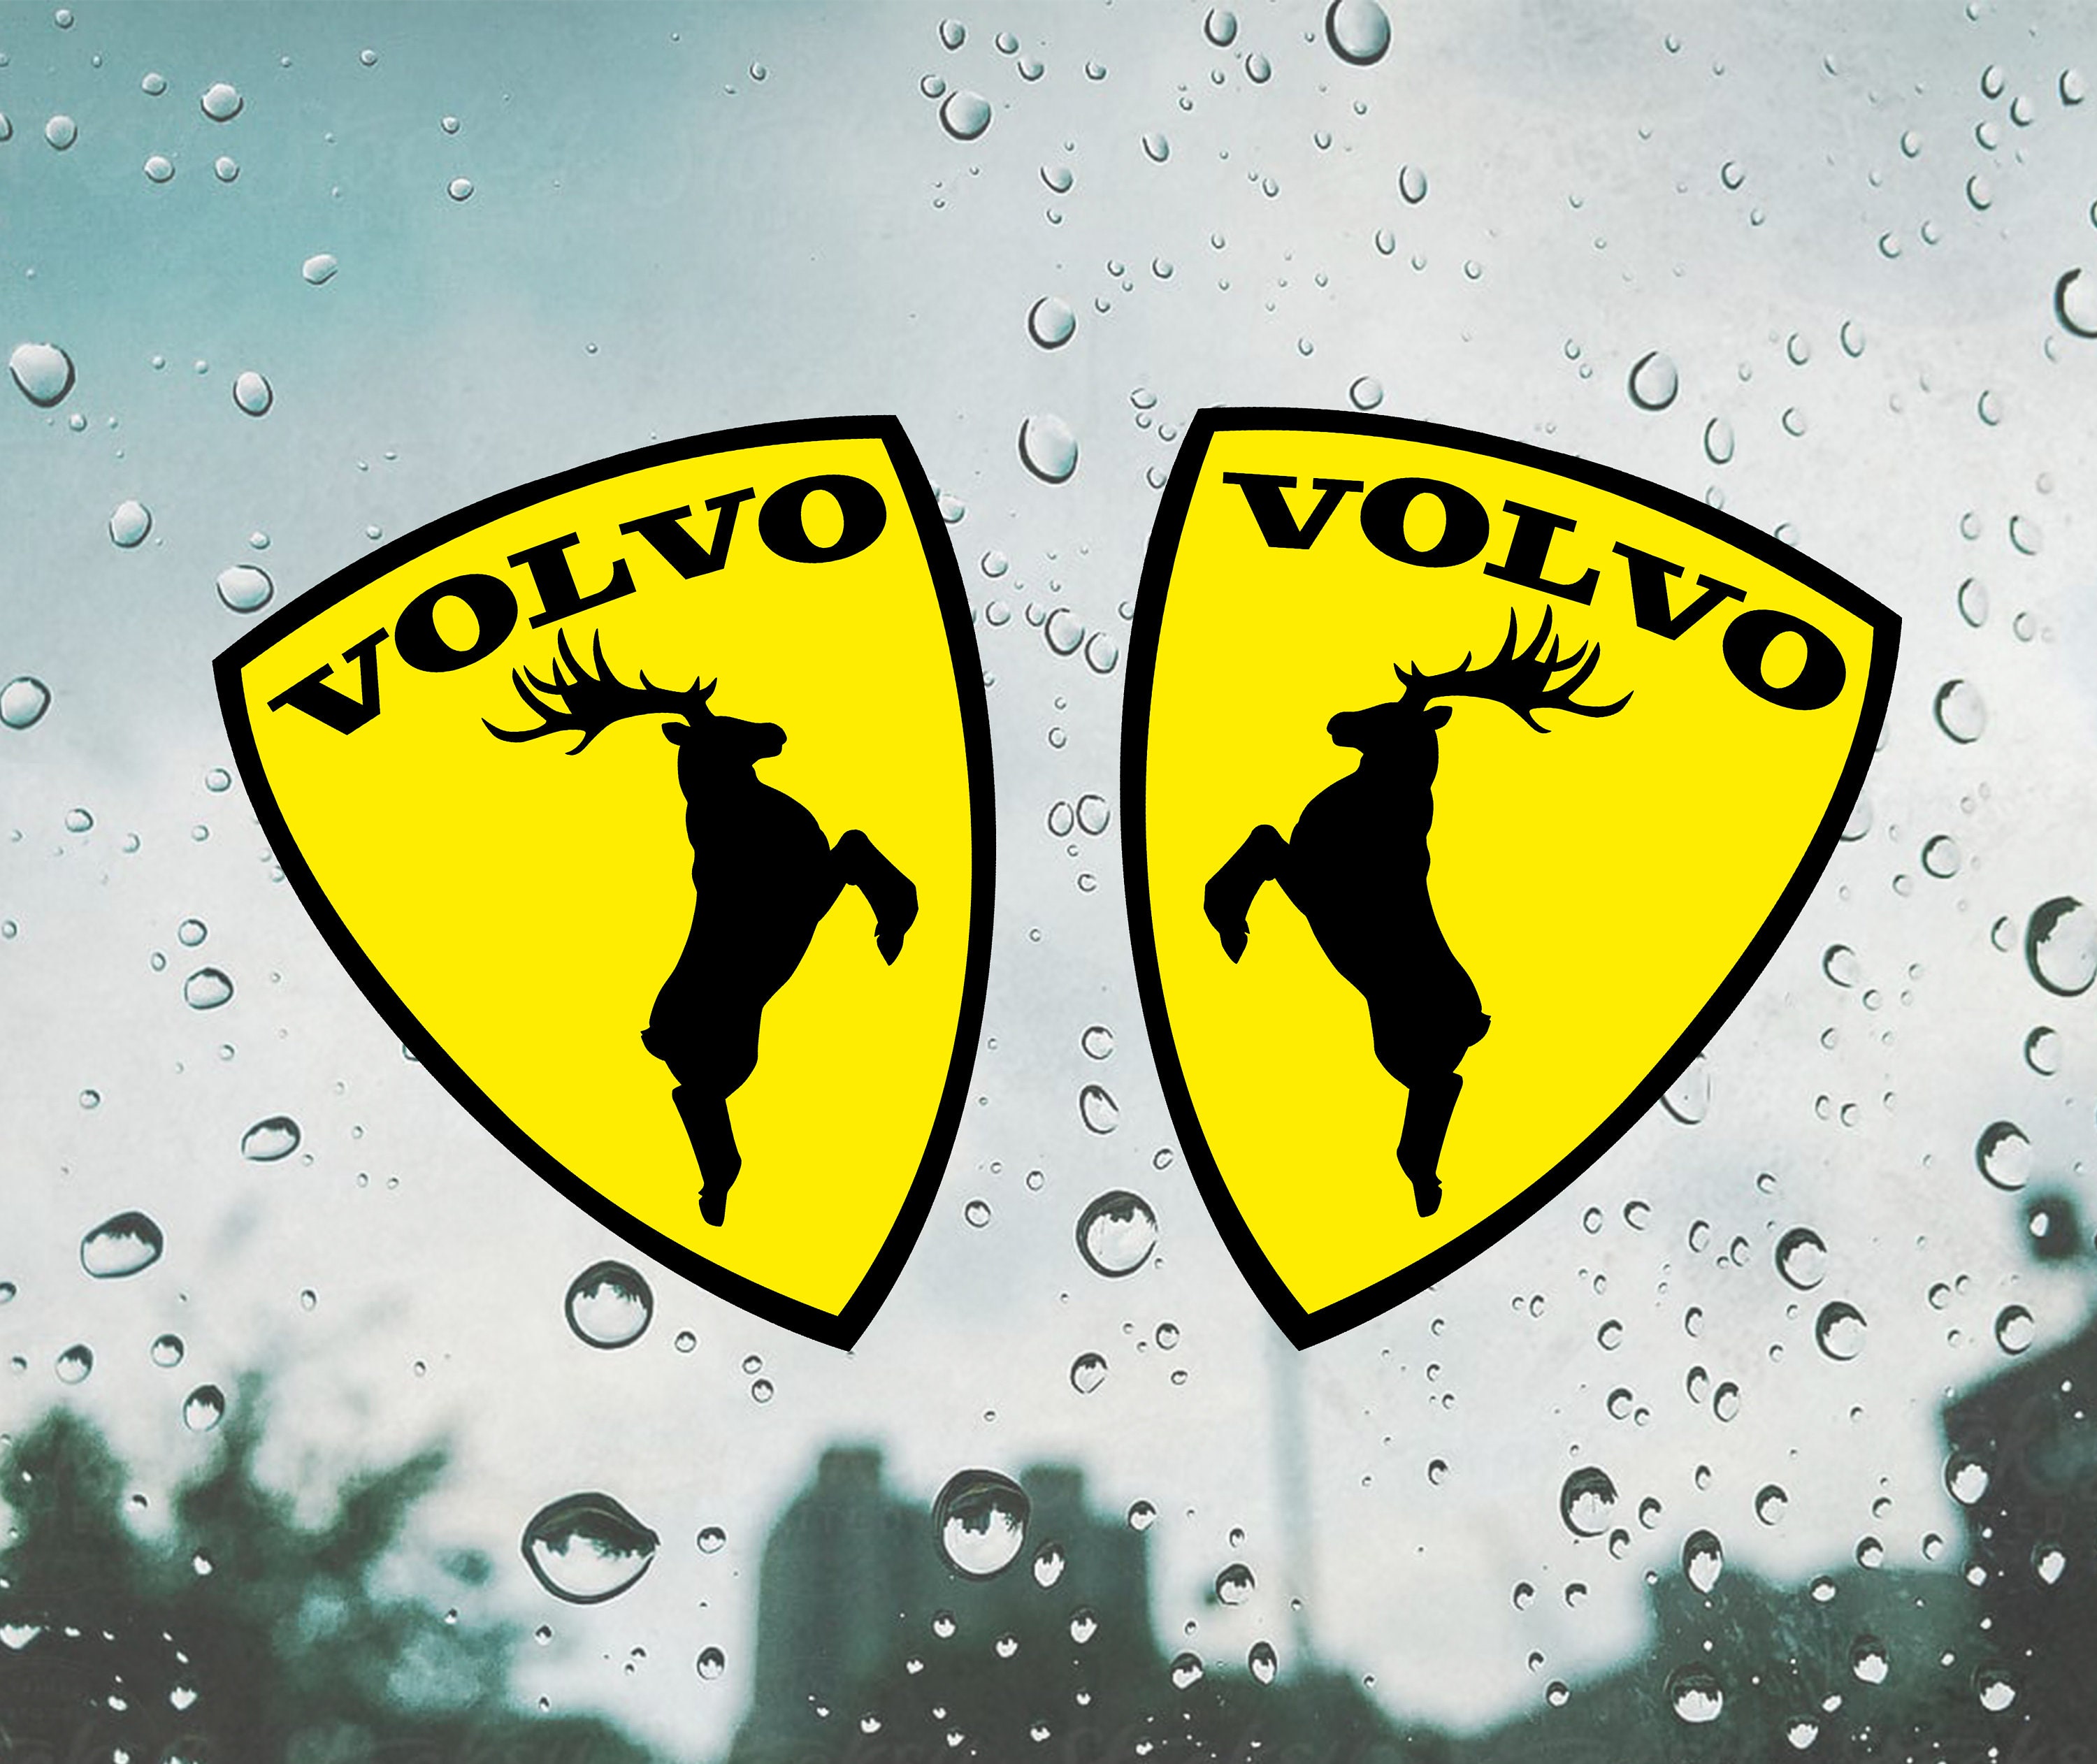 Buy Volvo Sticker / Decal Car Sticker / Volvo Elk Sticker / Decal / Window  Moose Sticker 2pcs. Online in India 